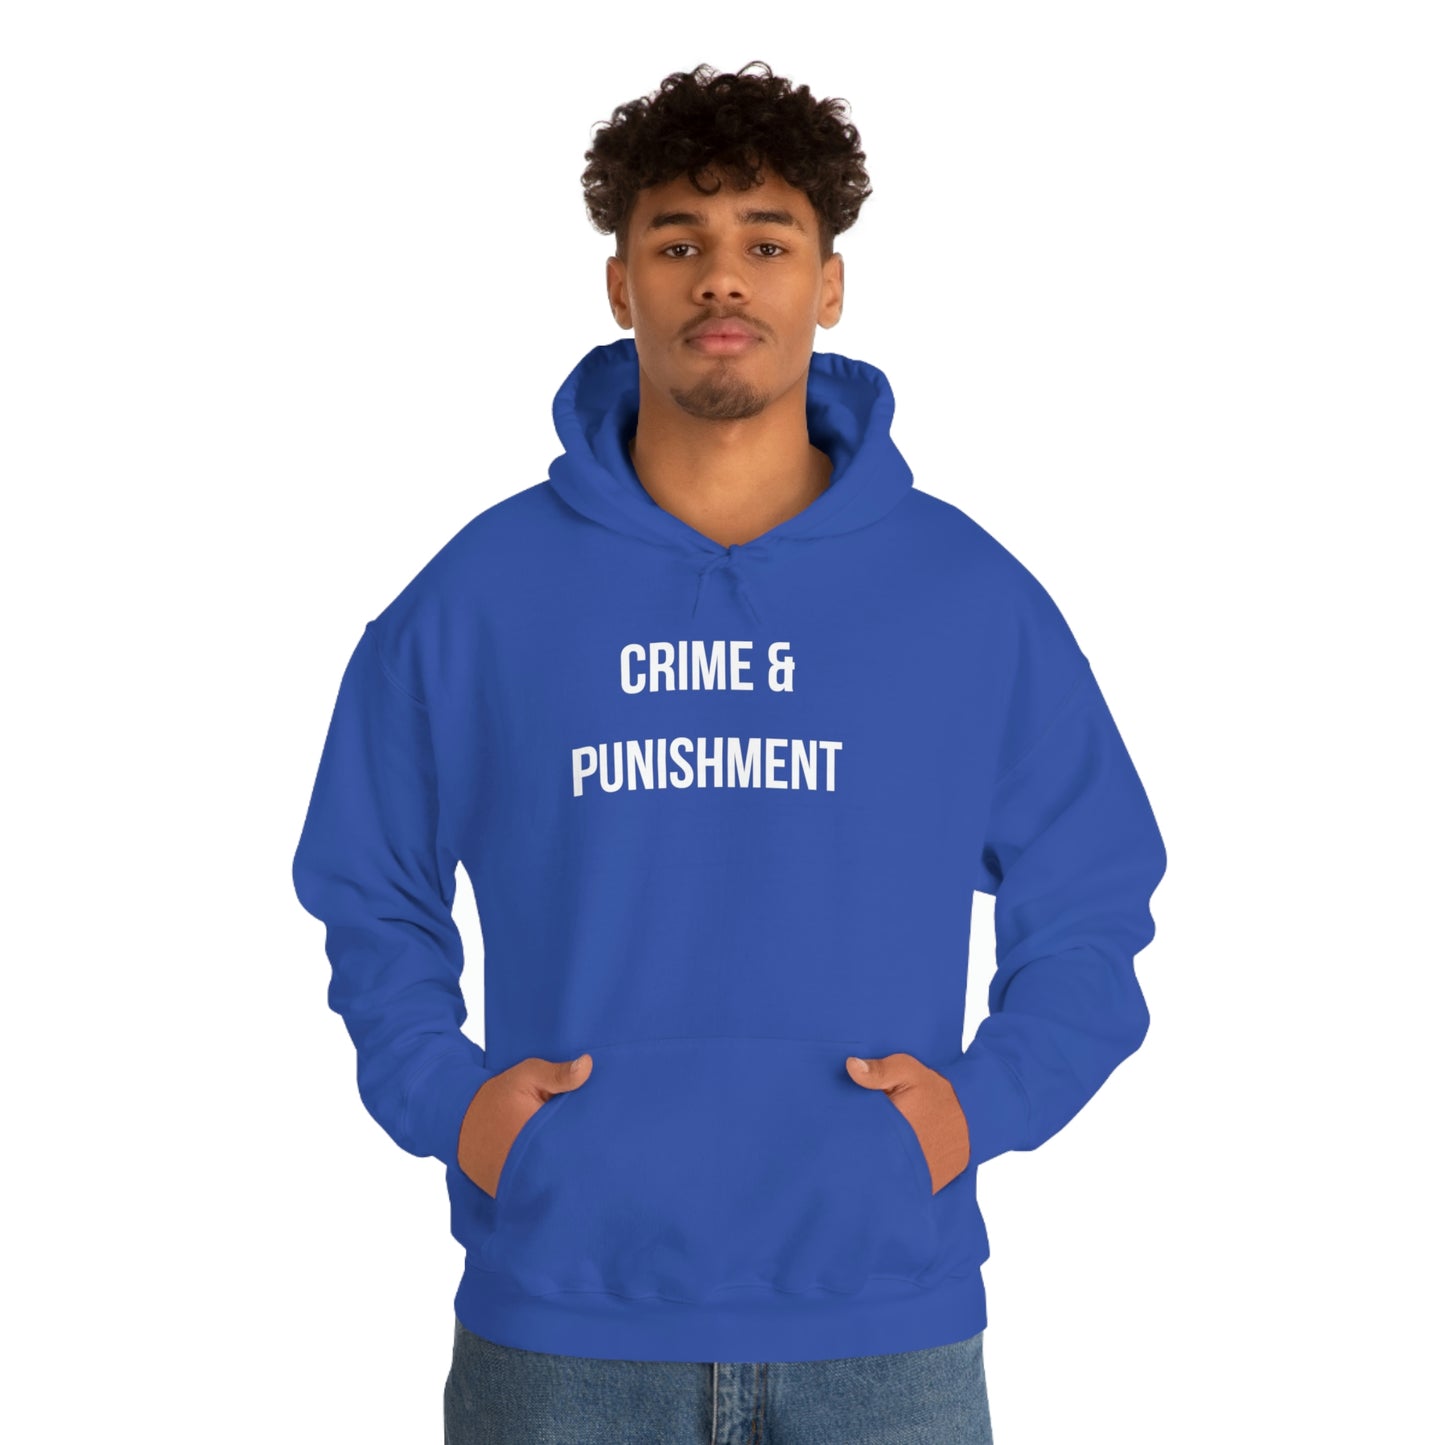 CRIME & PUNISHMENT Unisex Hoodie